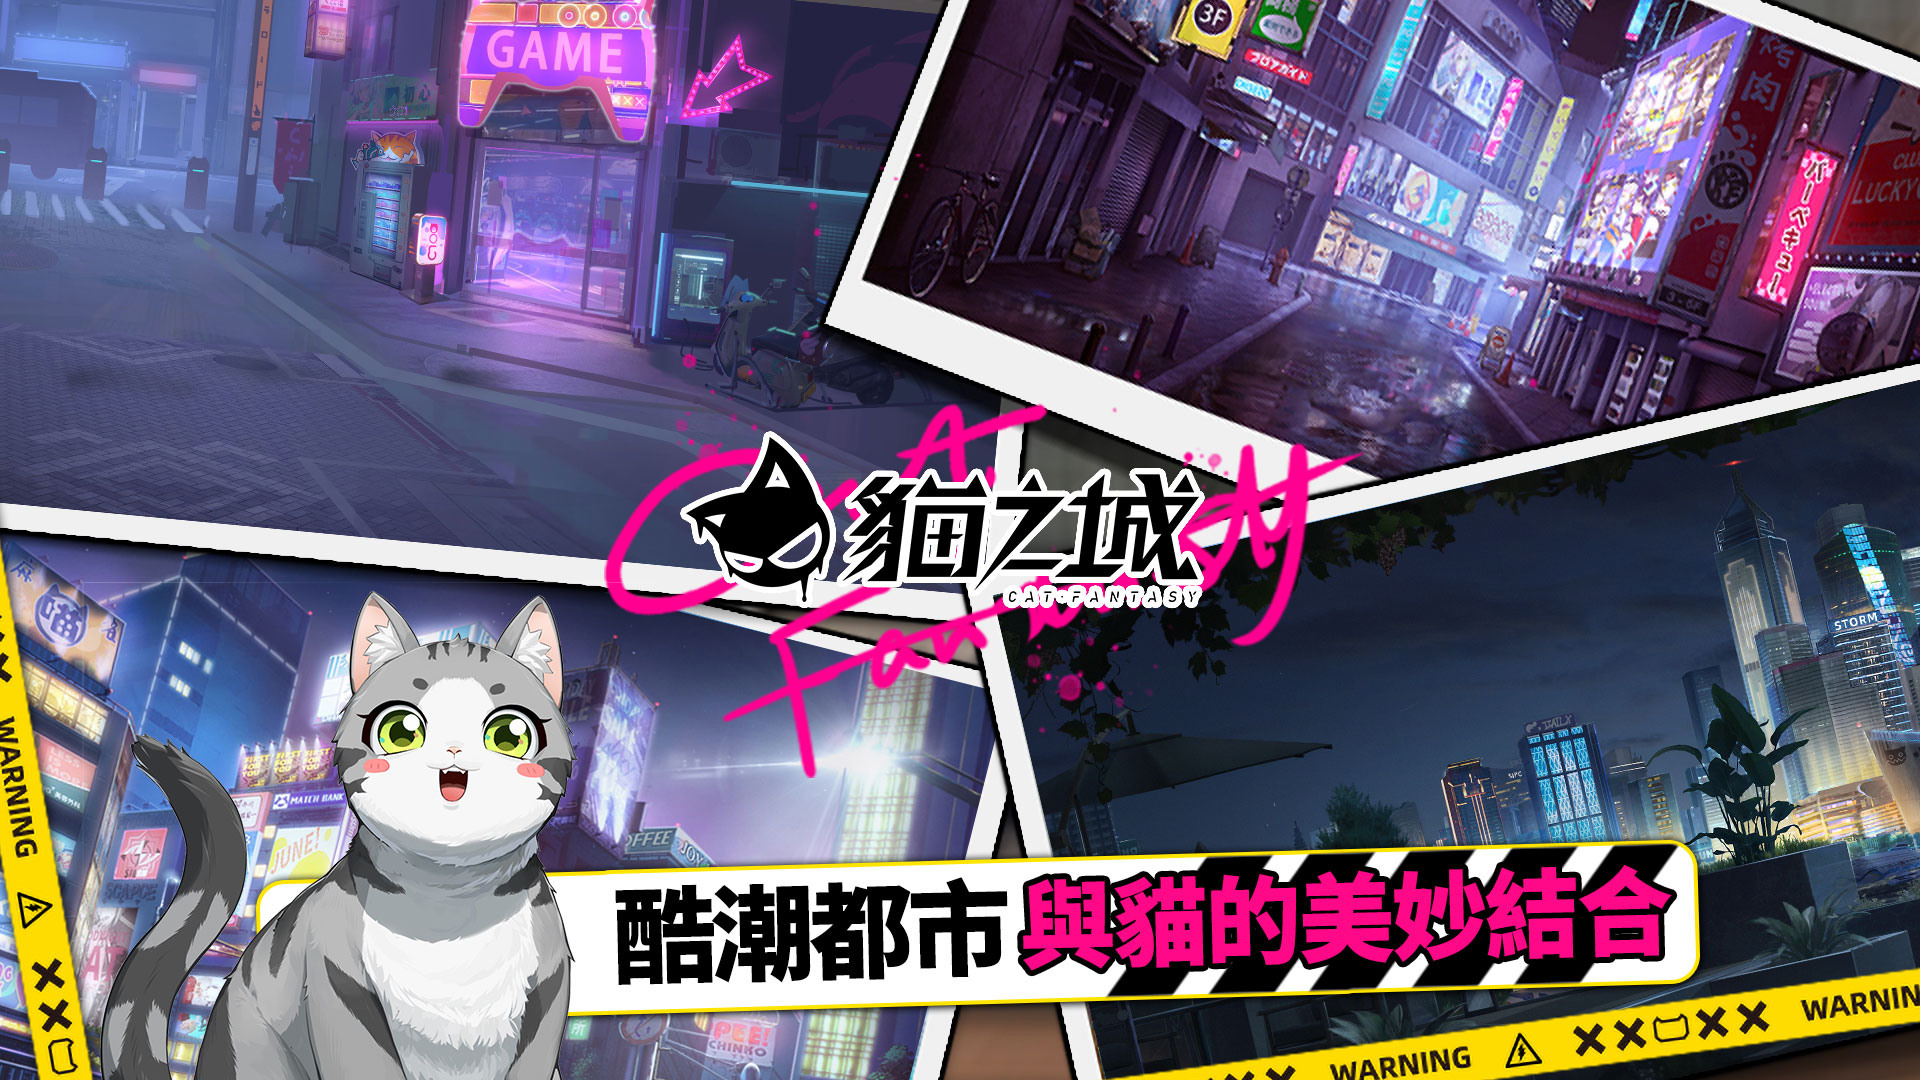 《猫之城》x日本知名音乐组合GARNiDELiA合作印象曲上线